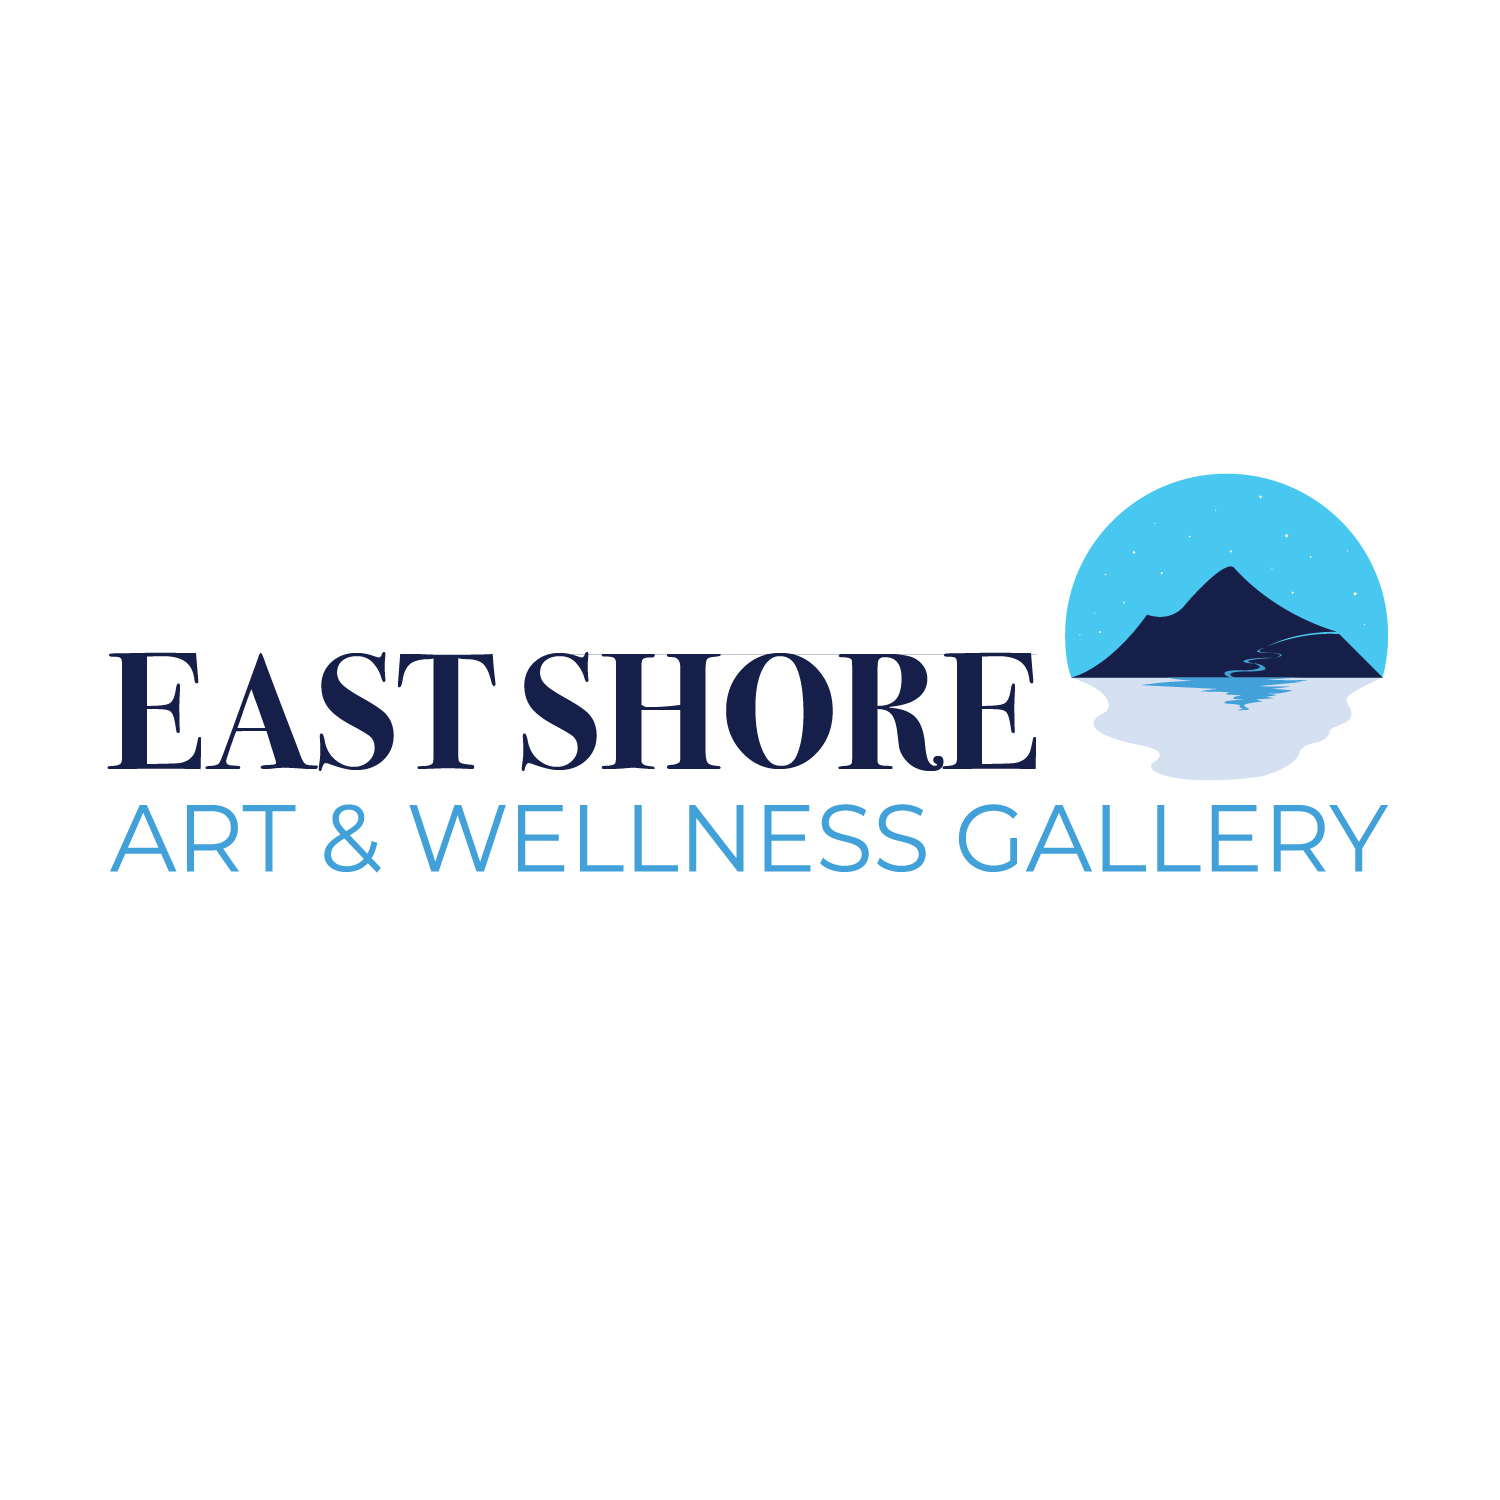 East Shore Art & Wellness